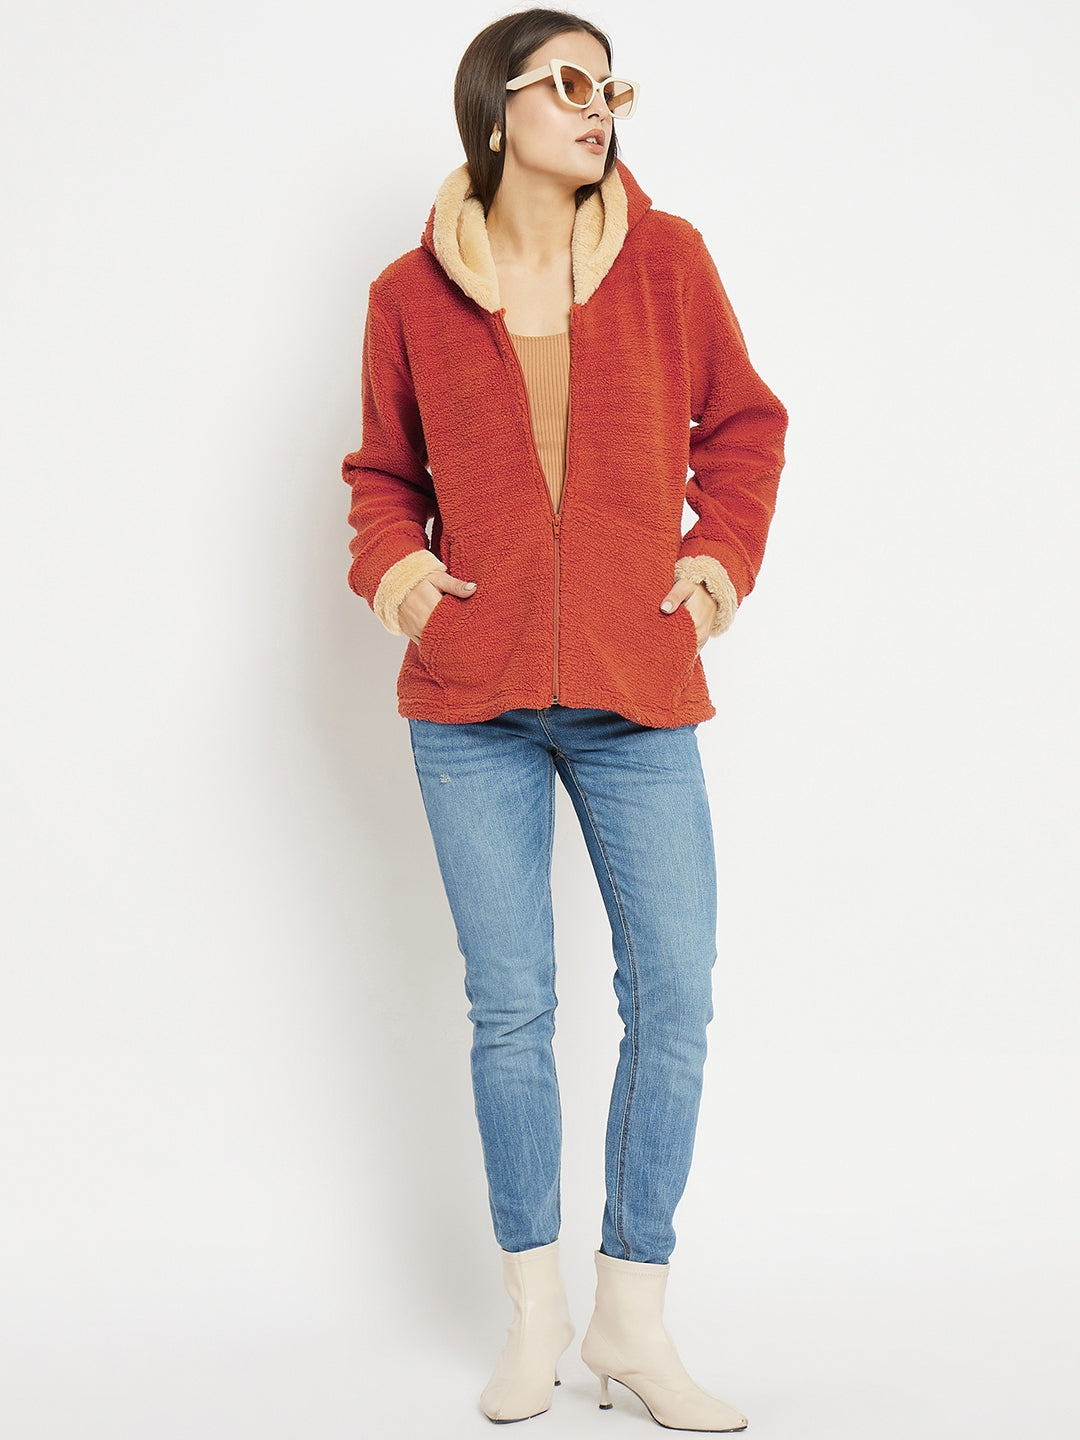 Womens's Orange Faux Fur Jacket